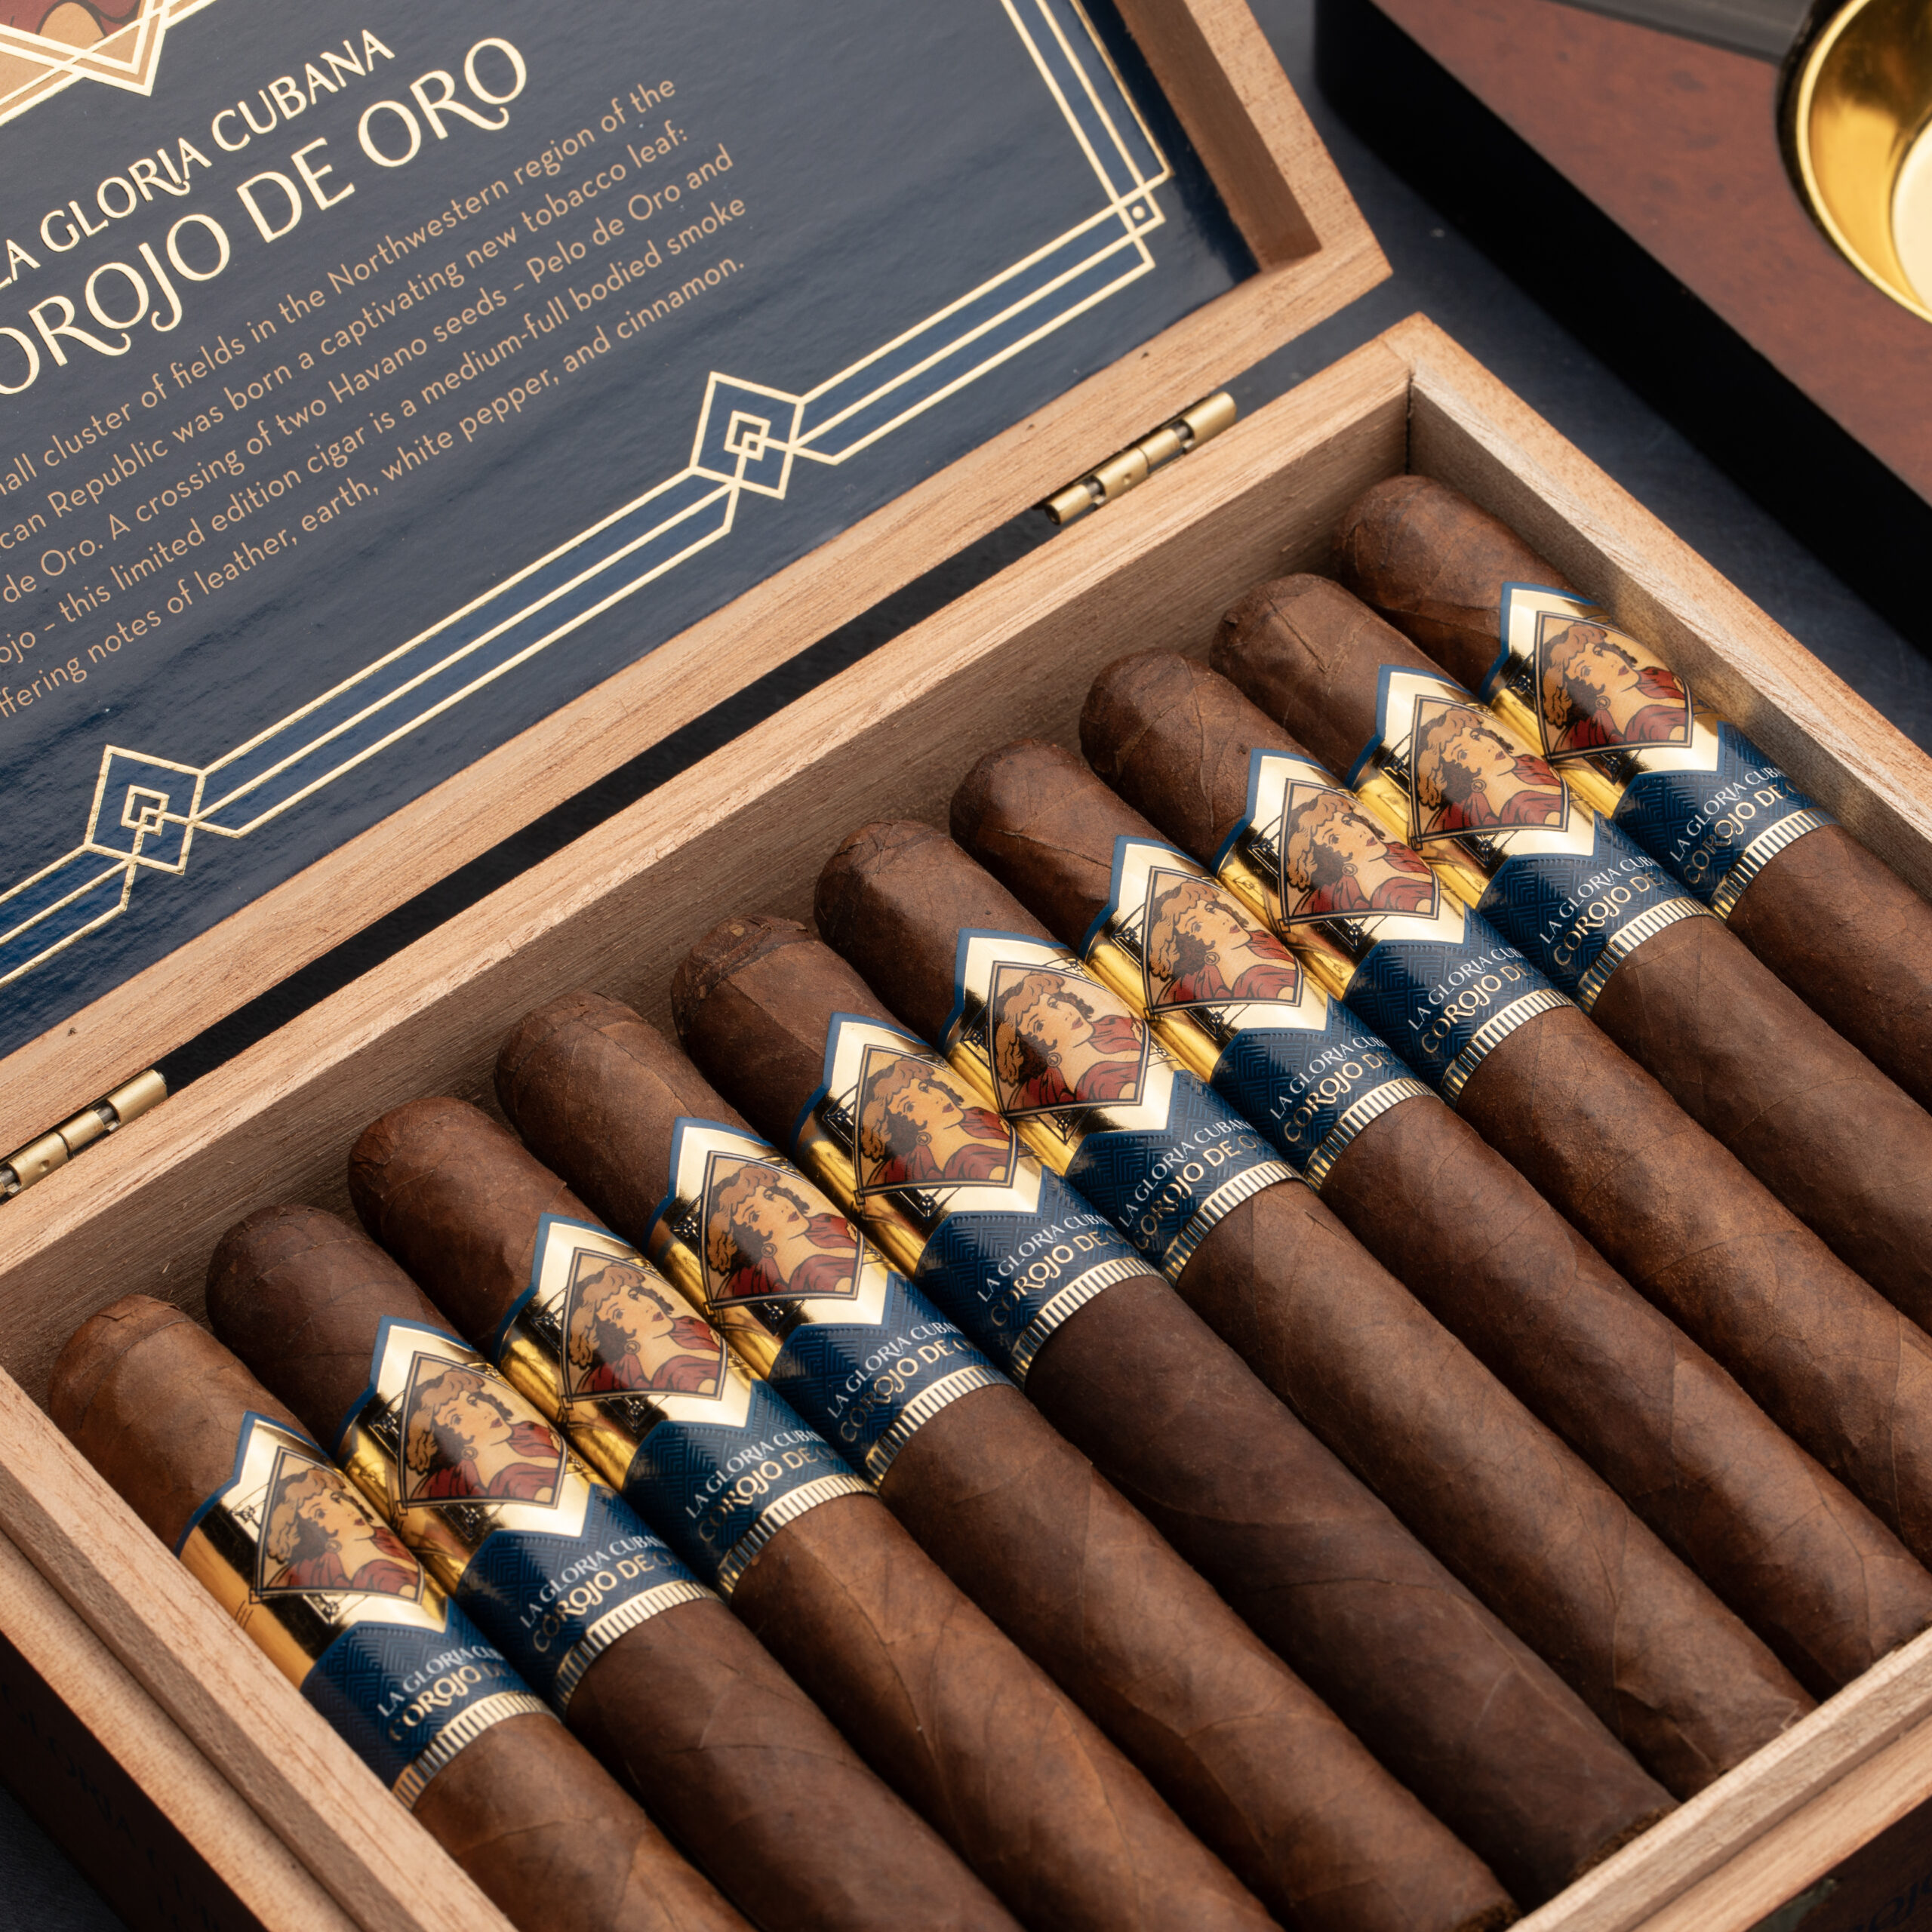 Corojo de Oro Box of Cigars